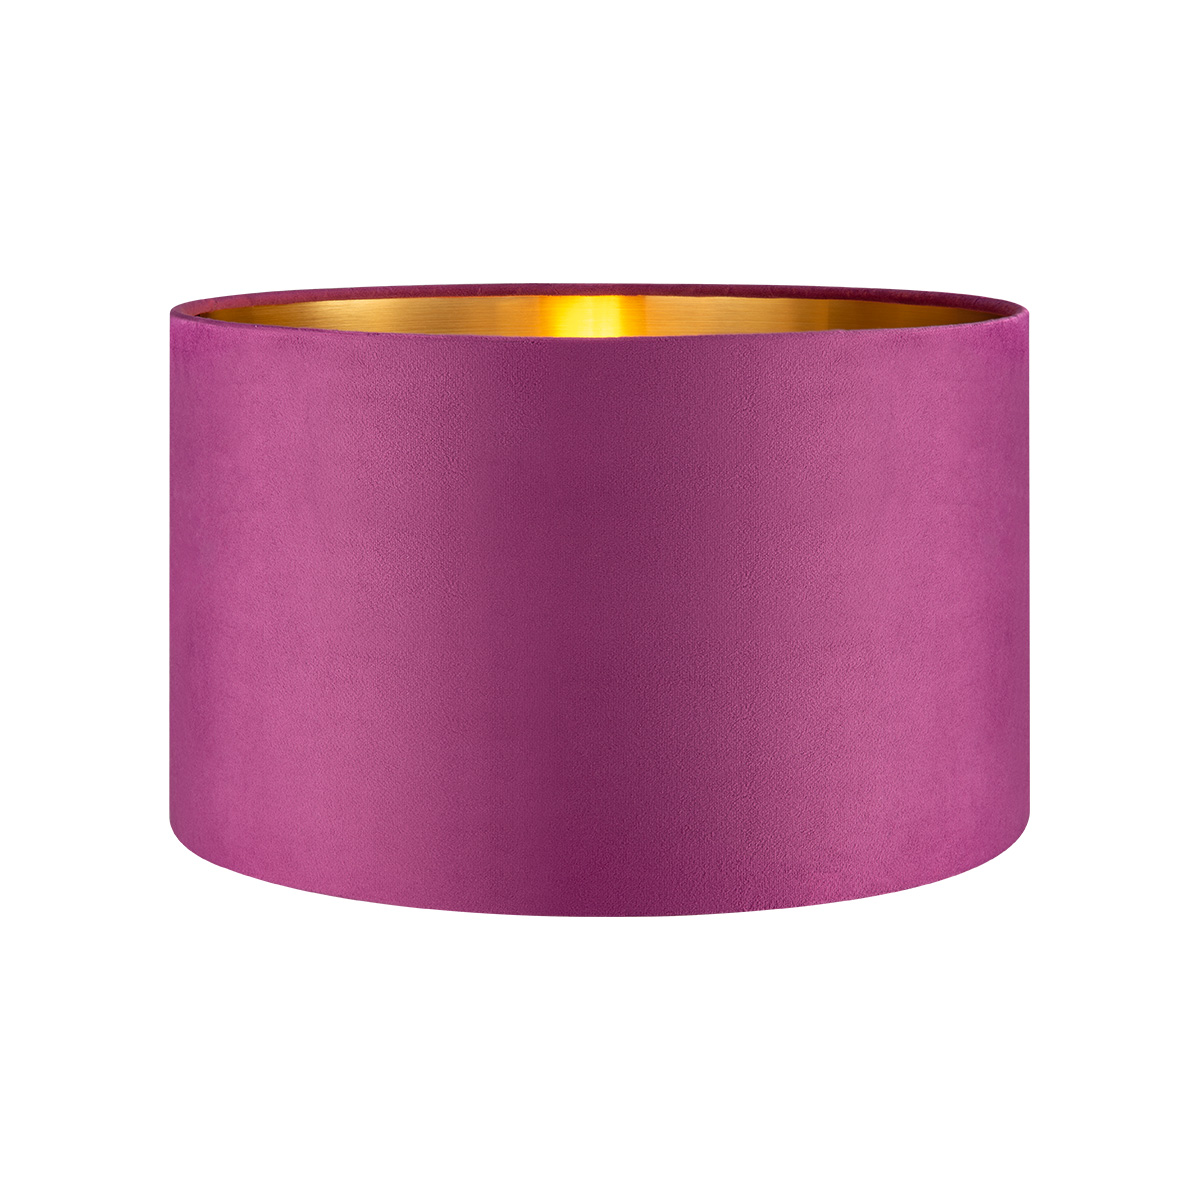 Tangla lighting - TLS7564-35PP - Lampshade - velvet - purple - diameter 35cm - E27